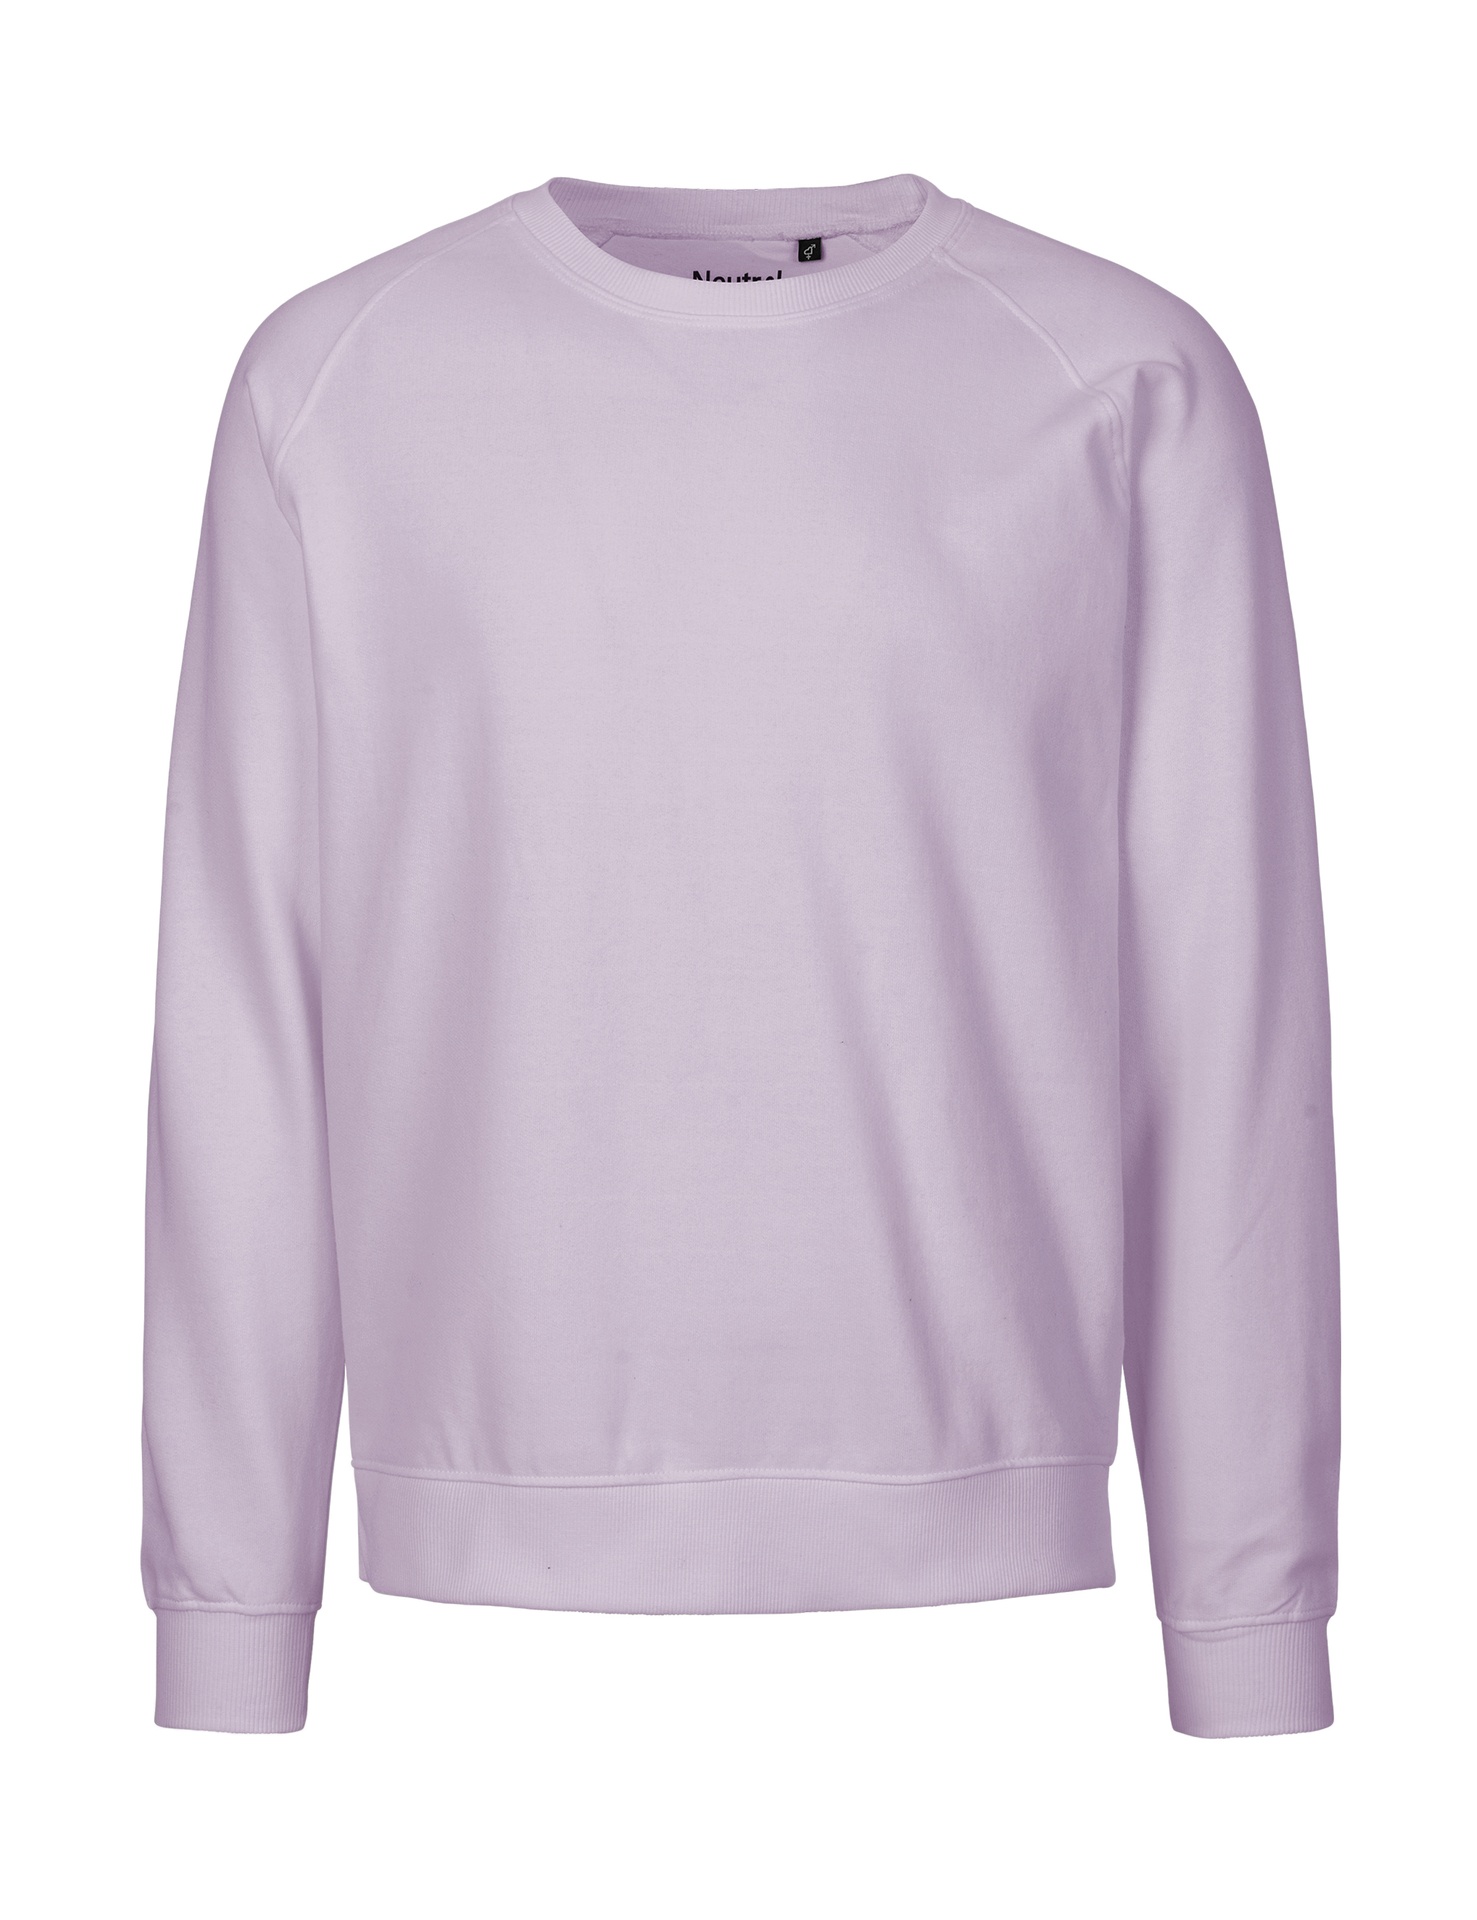 [PR/02847] Unisex Sweatshirt (Dusty Purple 42, 3XL)